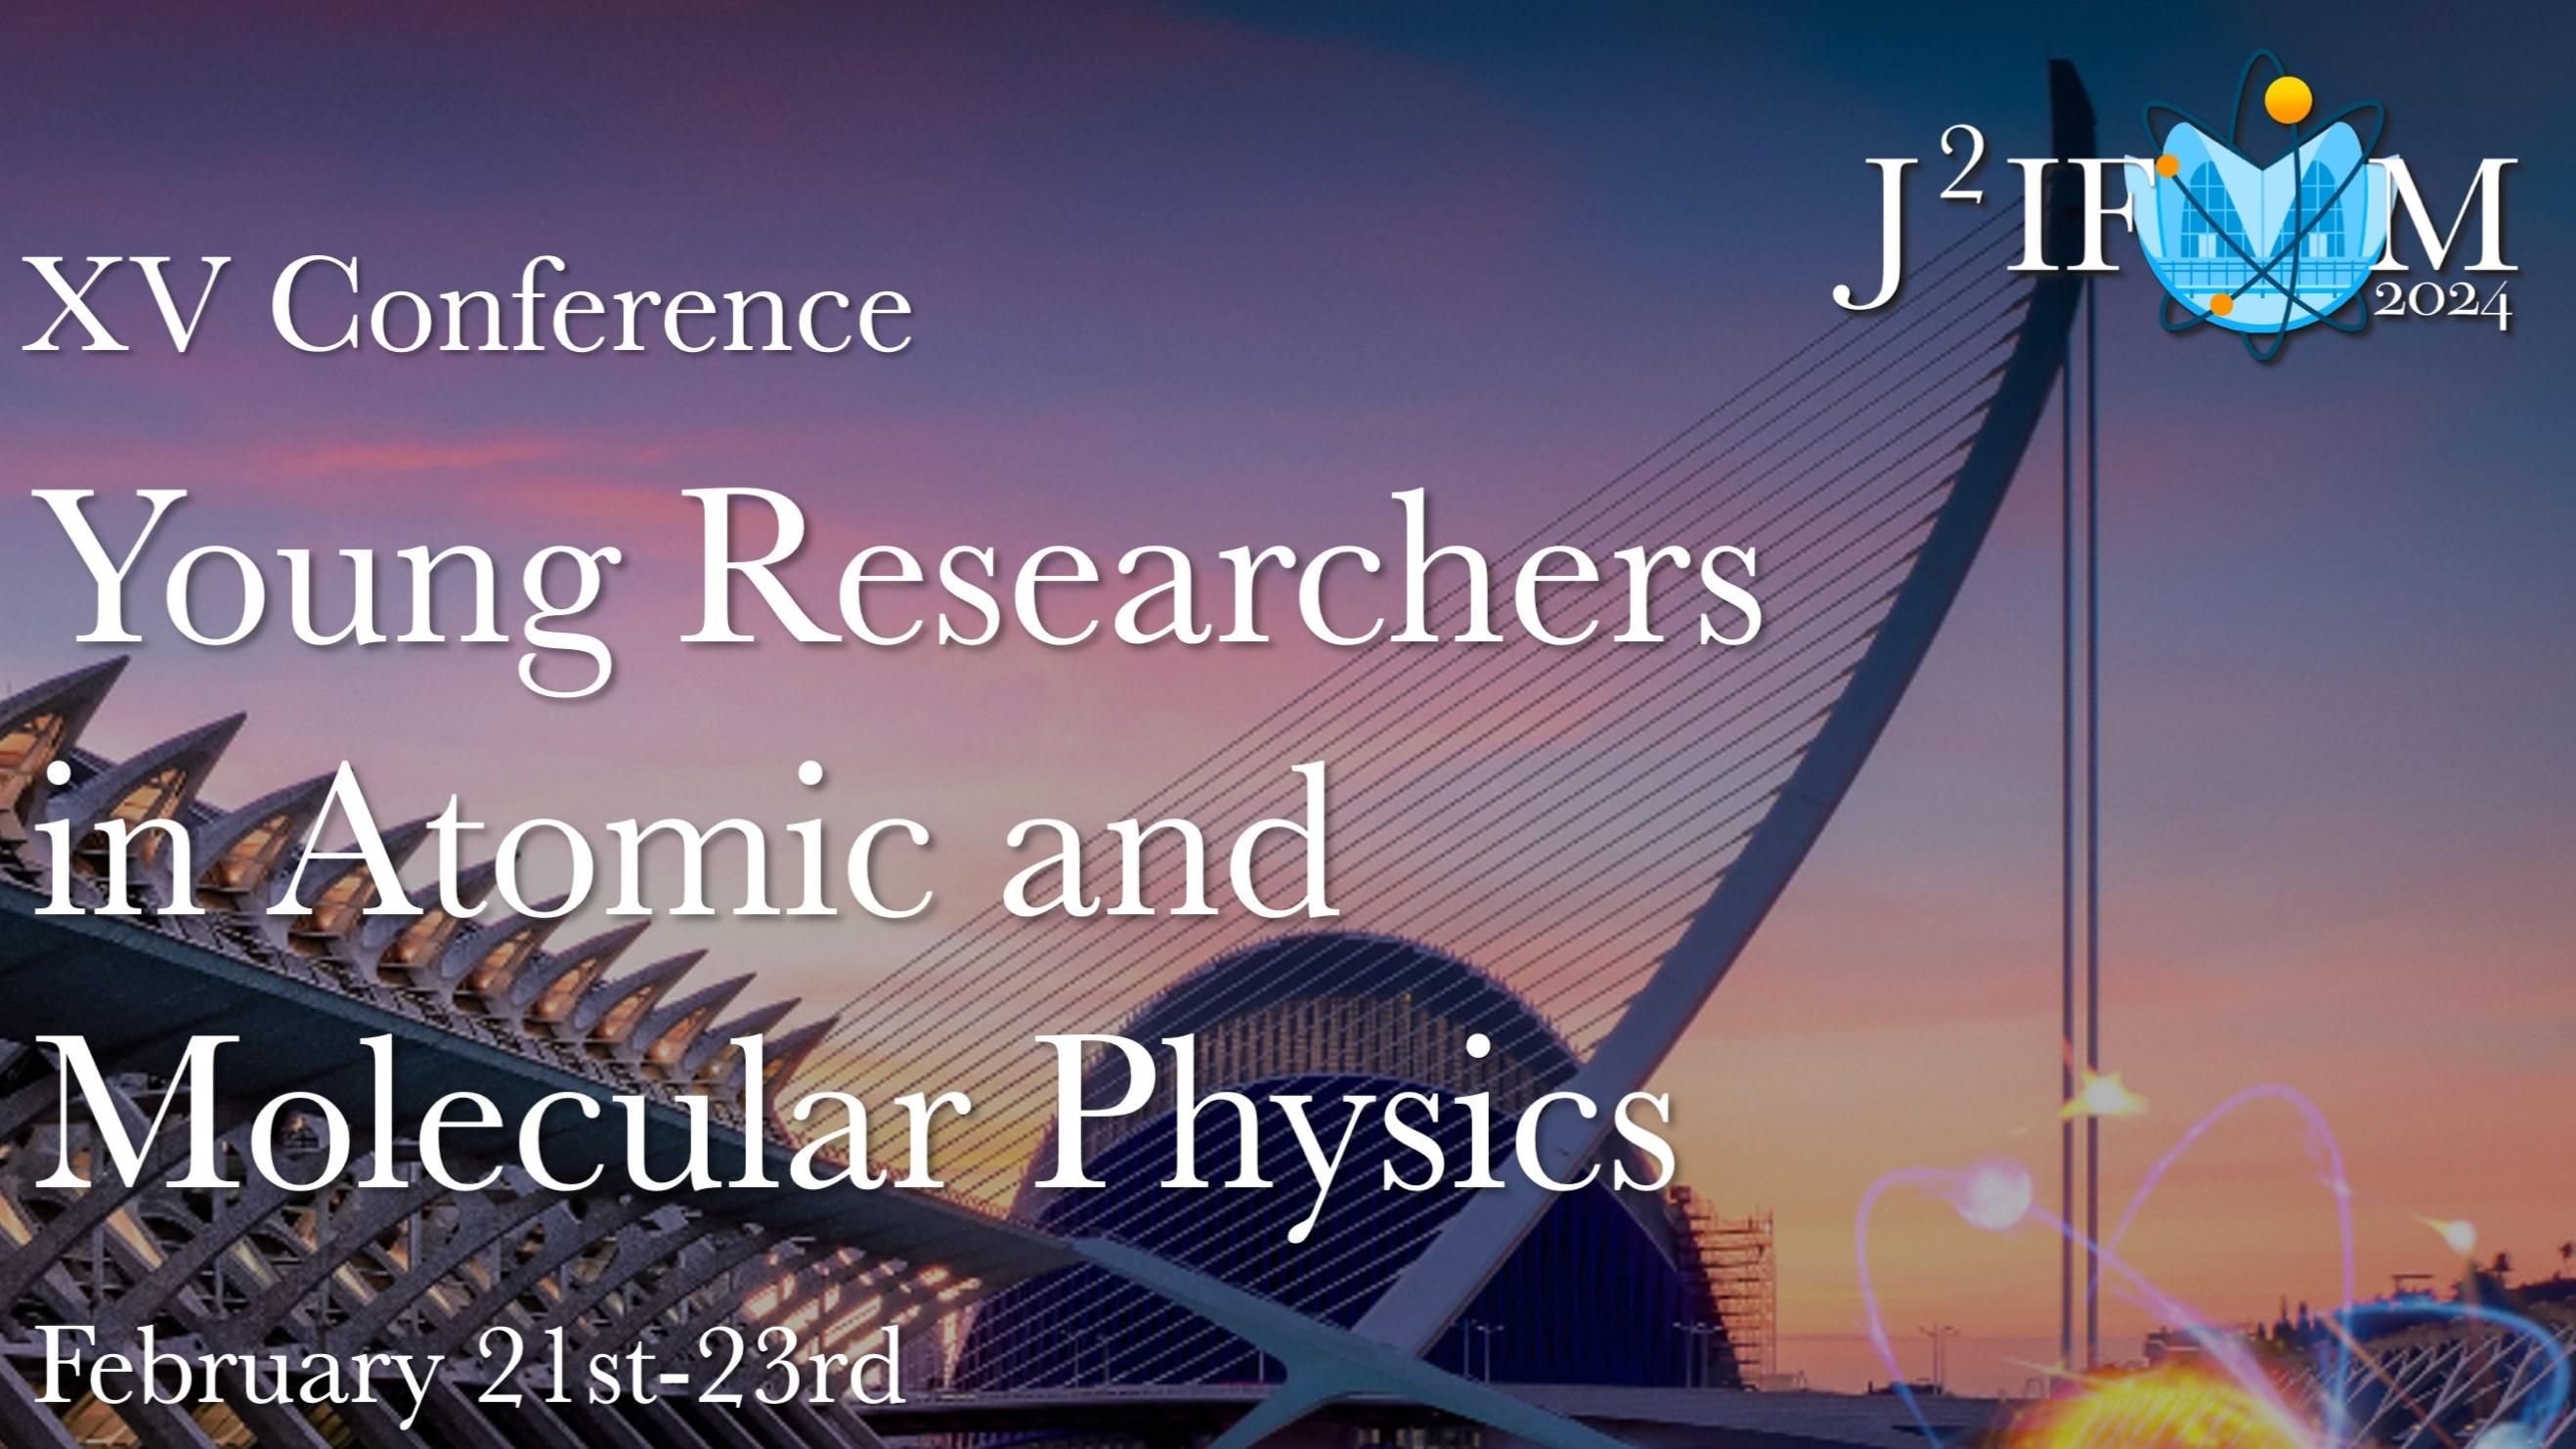 J2IFAM 2024 | XV Jornadas de Jóvenes Investigadores en Física Atómica y Molecular